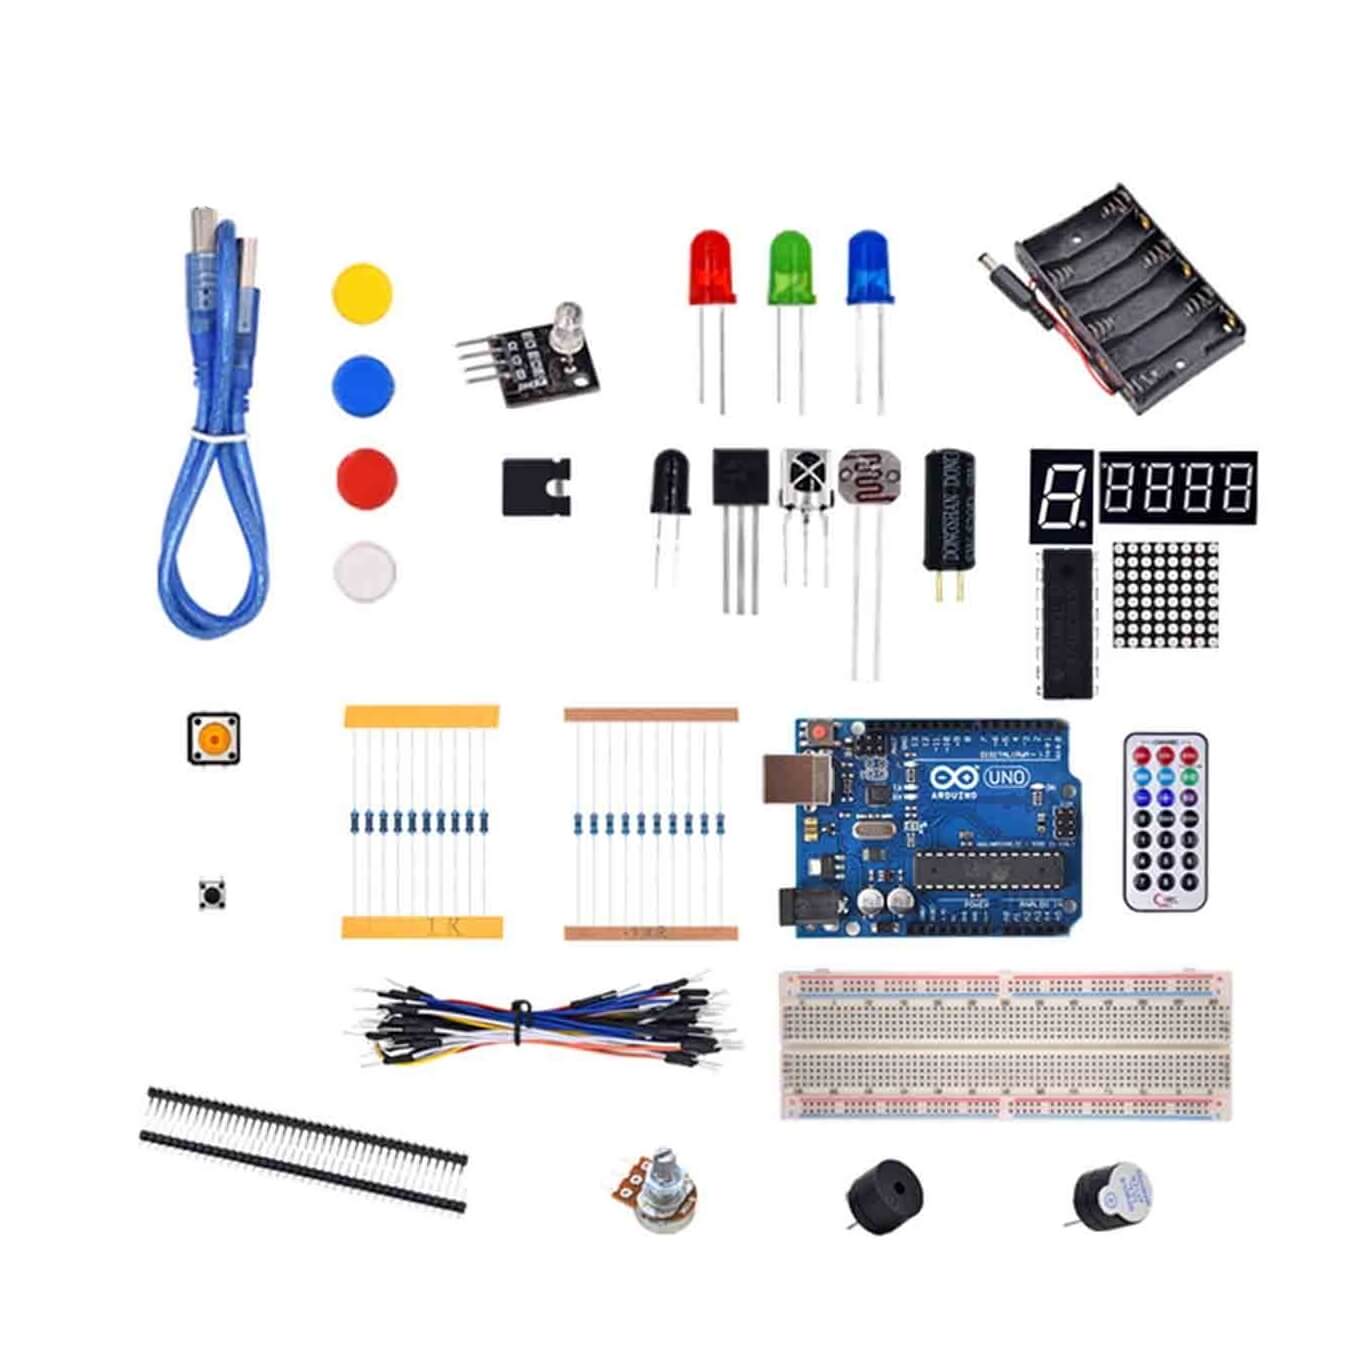 Illinois Cortar serie Kit Básico Arduino Uno R3 para Aprendizaje y Proyectos - Electronilab